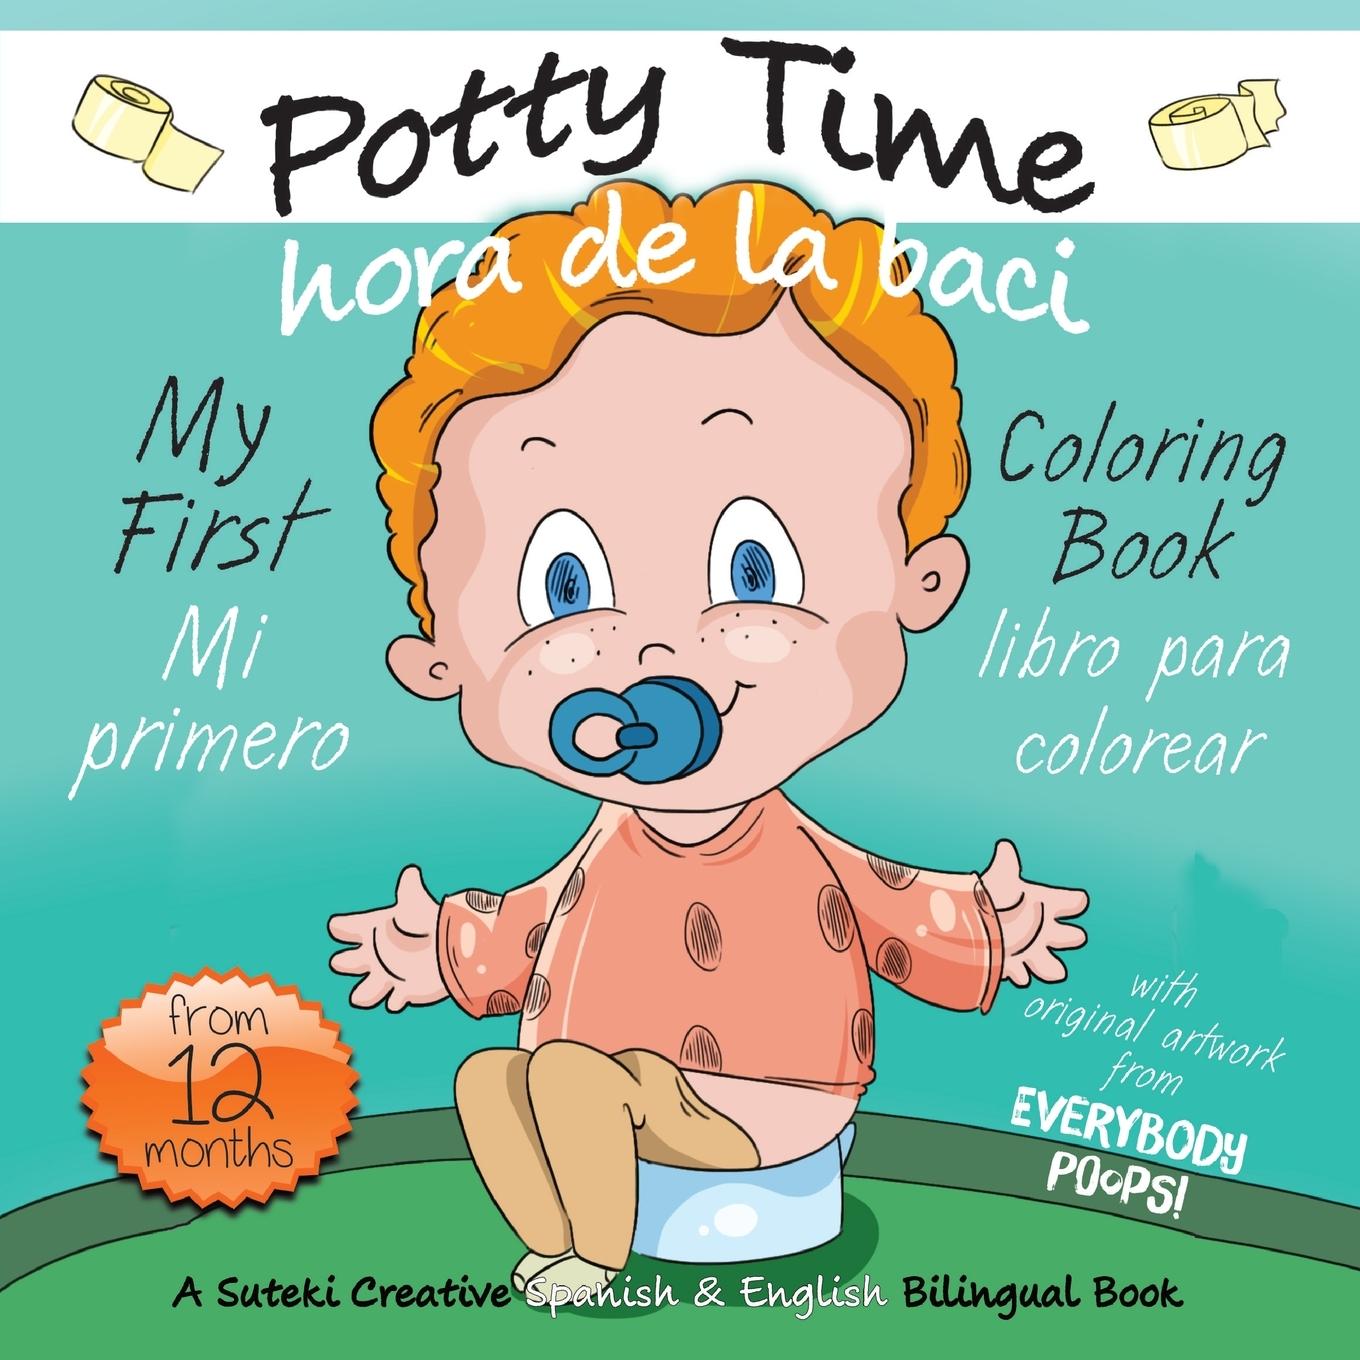 Carte My First Potty Time Coloring Book / Mi primero hora de la baci libro para colorear 